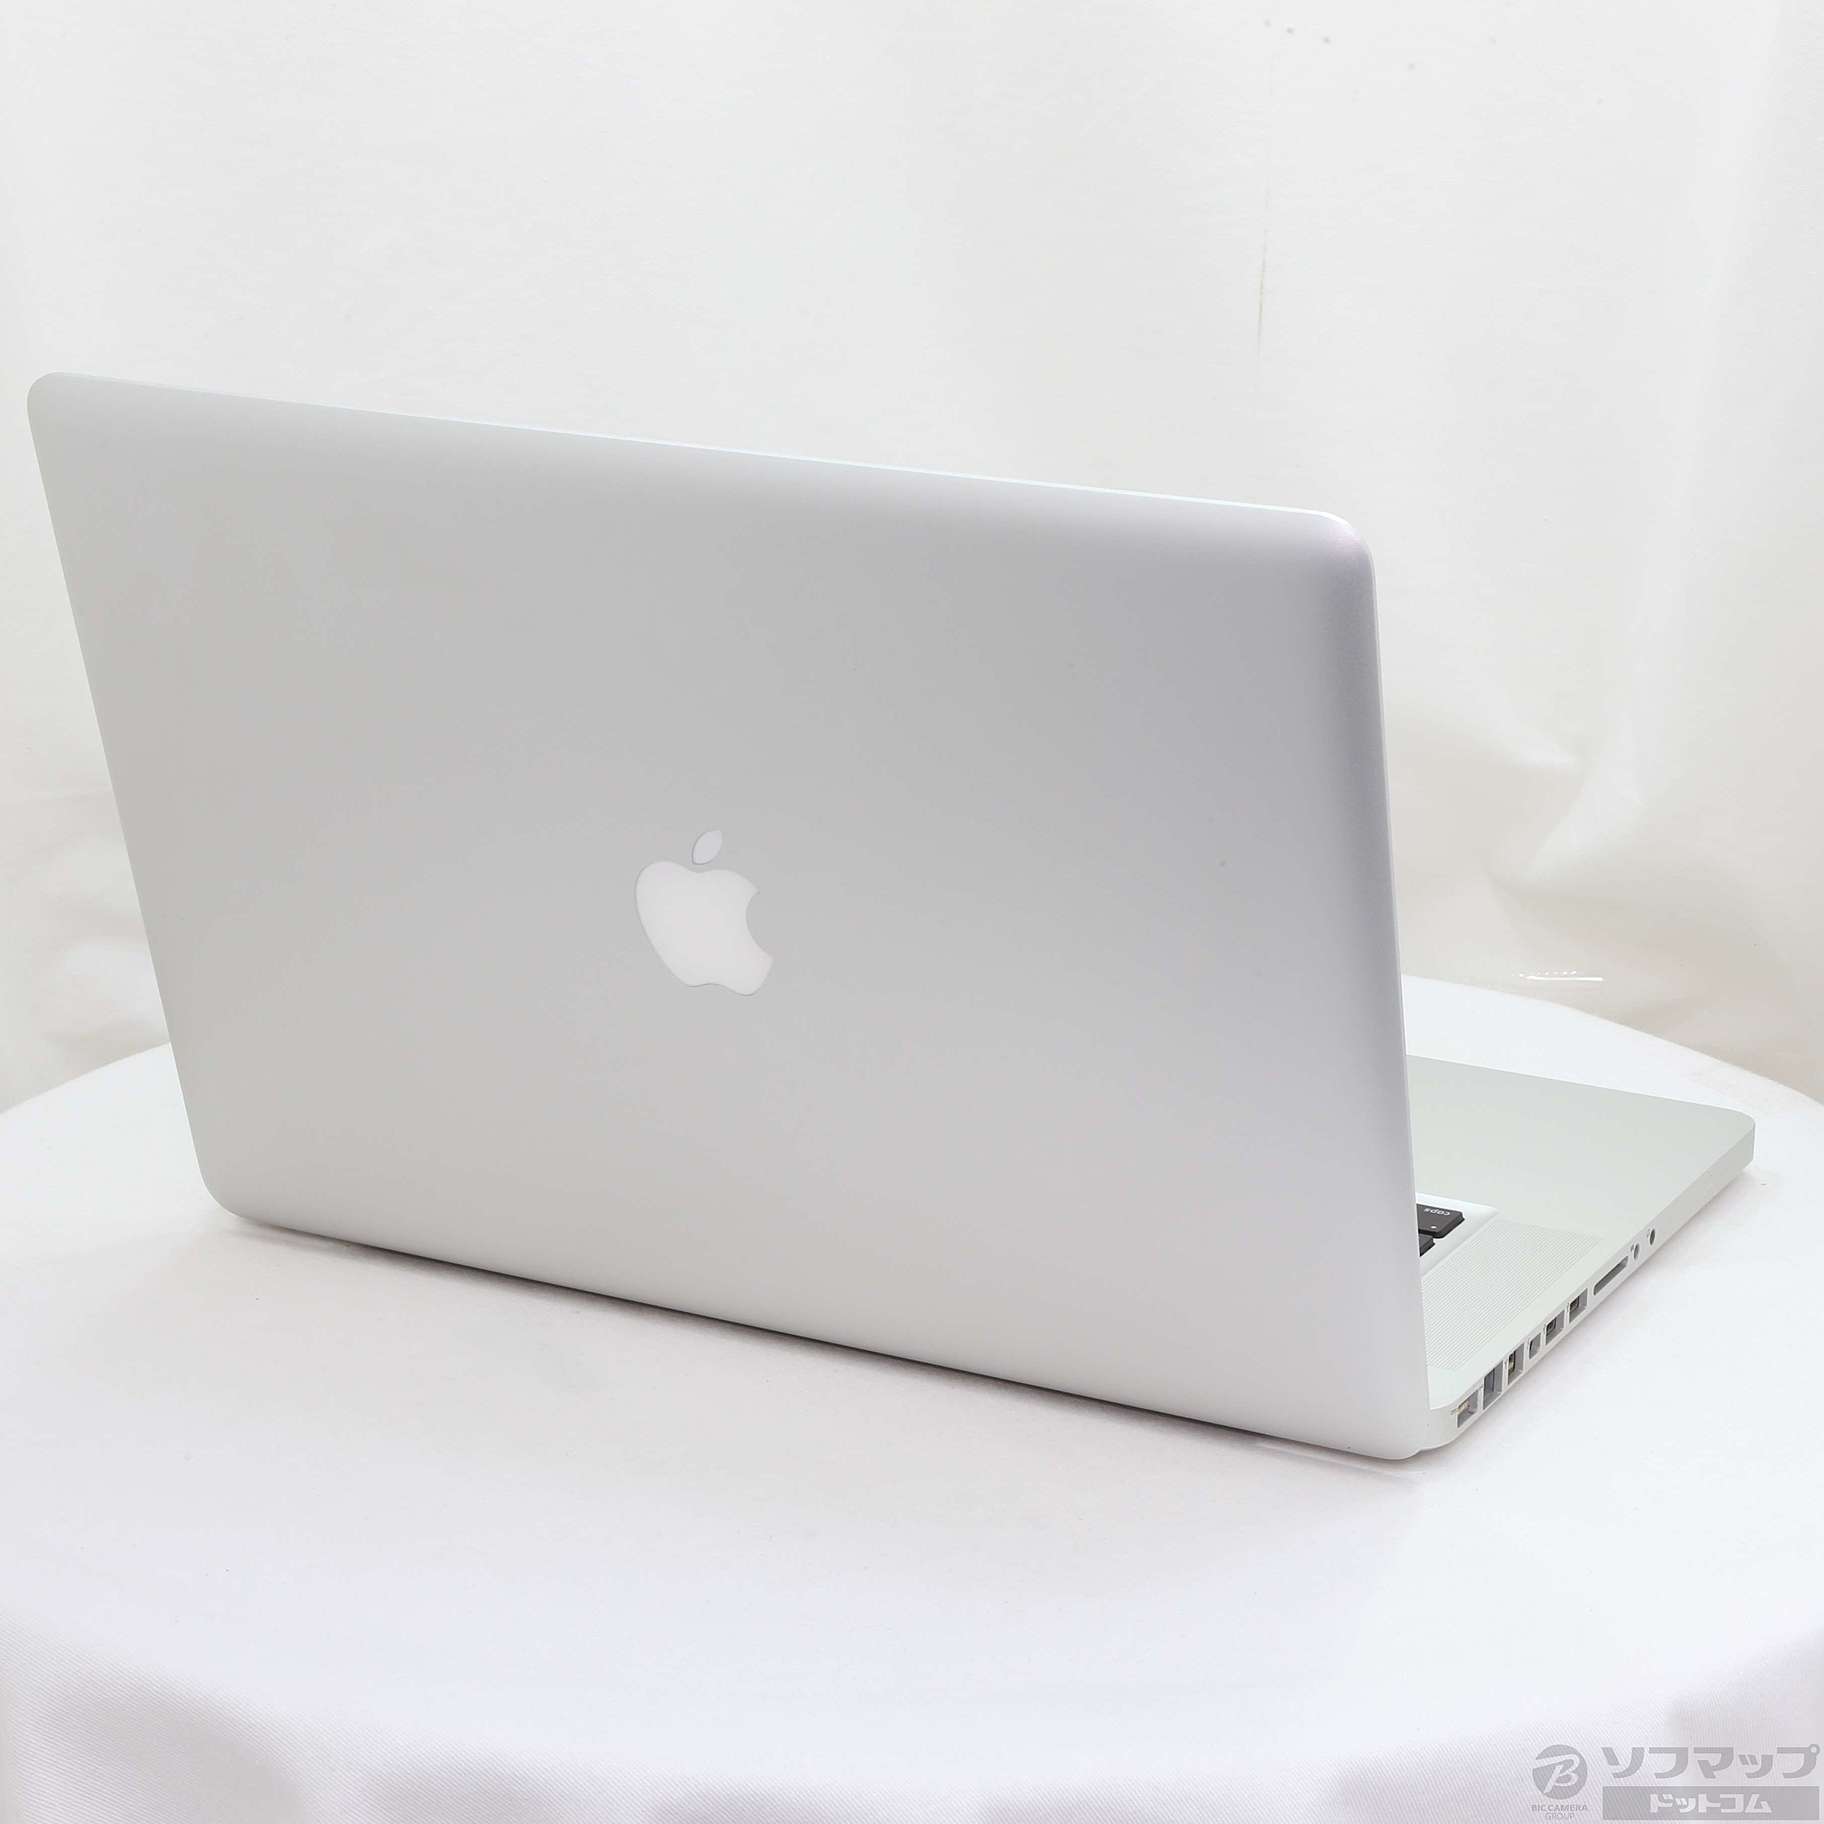 特価お得MacBook Pro 15インチ HDD500GB 4GB 純正アダプタ MacBook本体